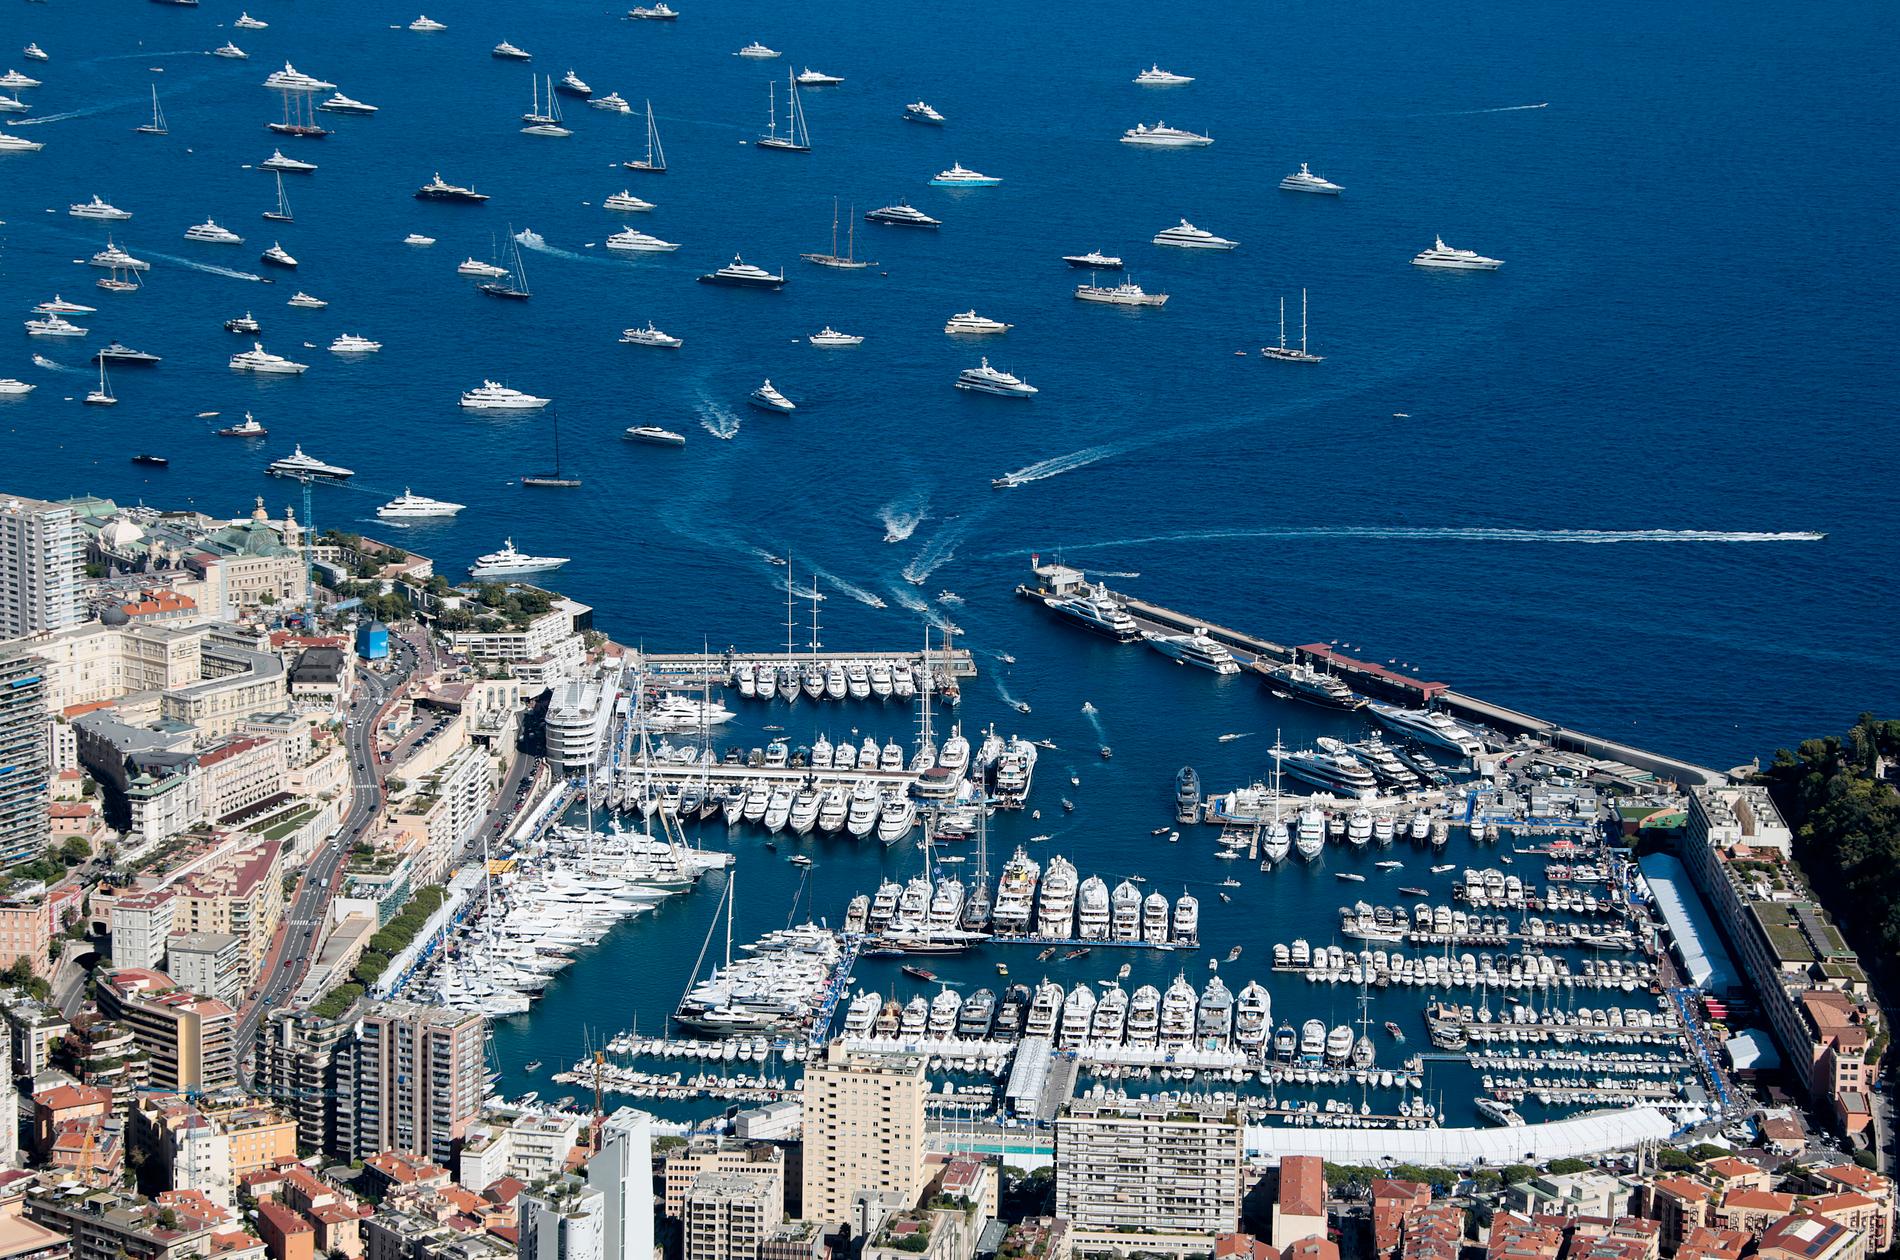 Monaco: Yacht på yacht på yacht. Just nu pågår Monacos årliga Yachtshow. Hundratals lyxbåtar ligger i och utanför hamnen. Showen räknas som en av världens mest prestigefulla inom "genren".